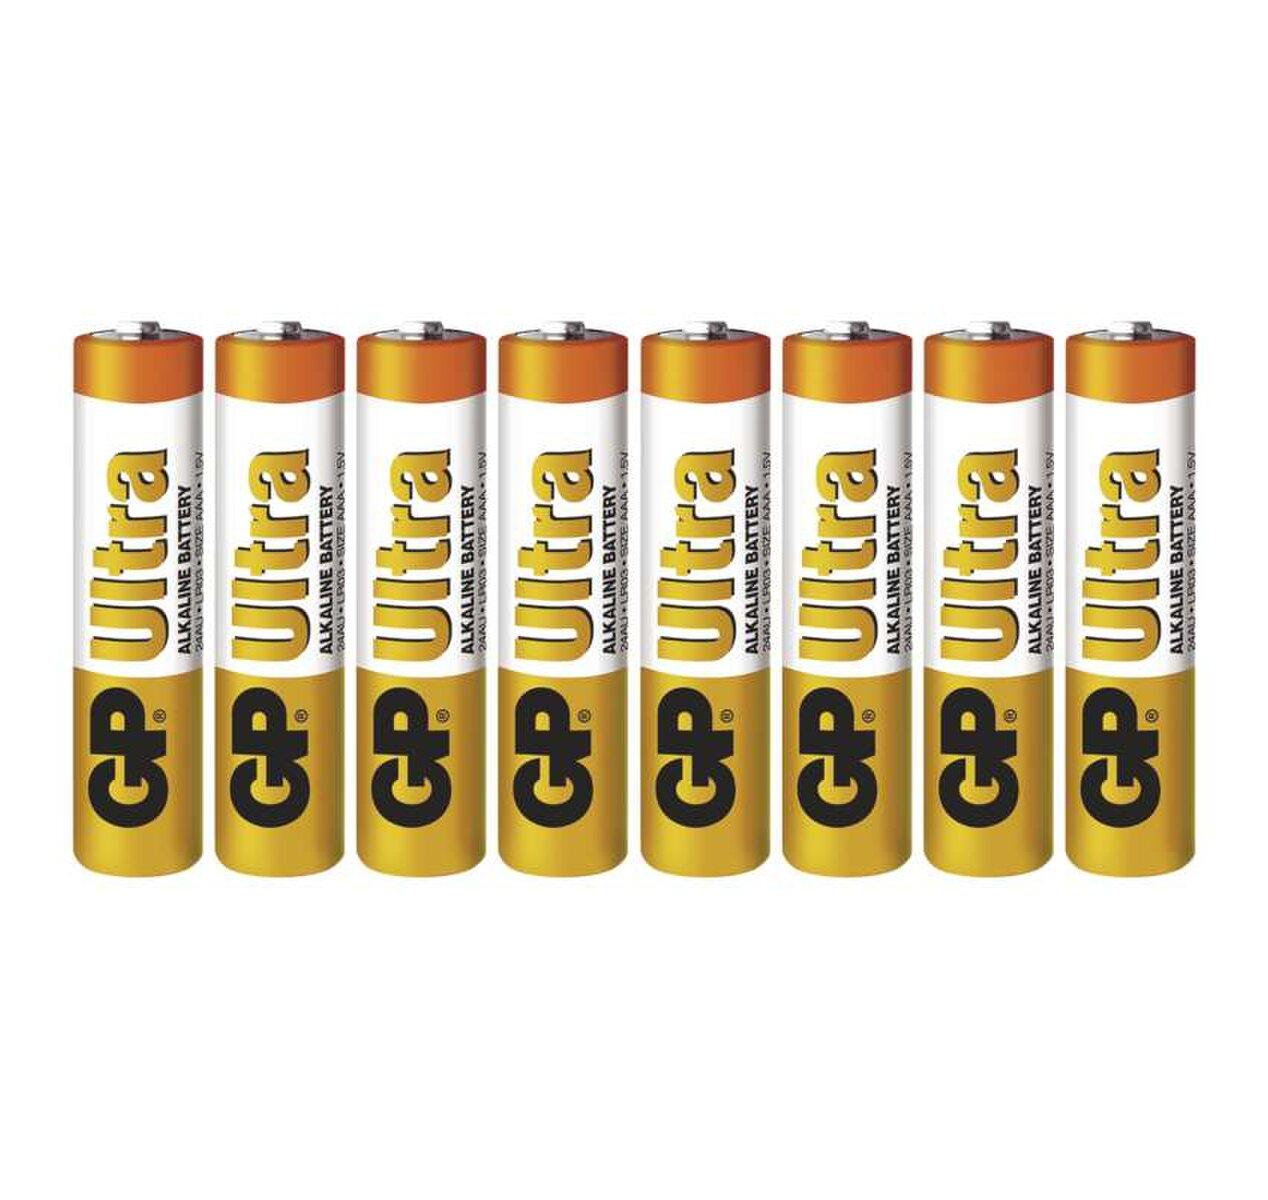 Batéria LR03 1,5V GP BAT. ULTRA Alkaline B19118 blis. 6+2ks                     